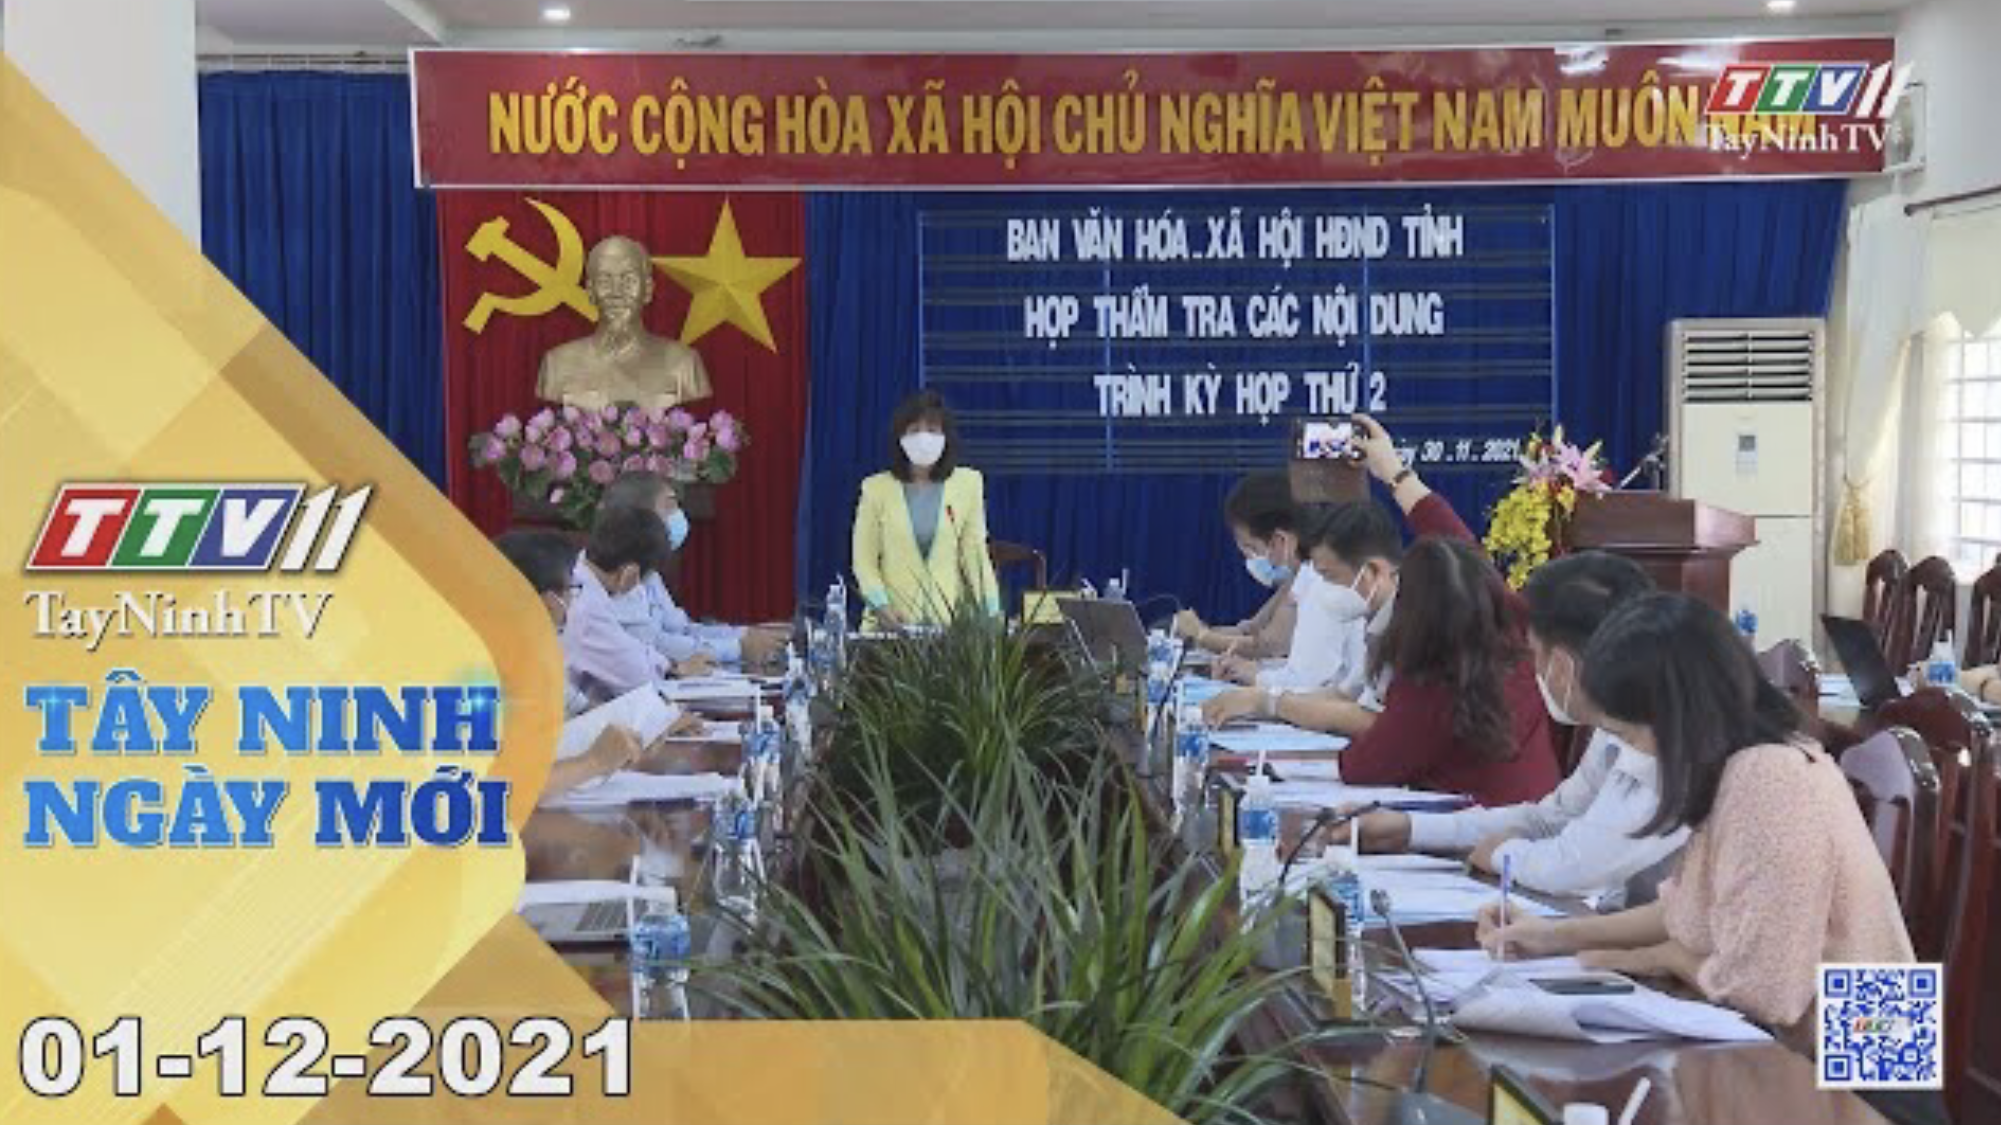 TÂY NINH NGÀY MỚI 01/12/2021 | Tin tức hôm nay | TayNinhTV